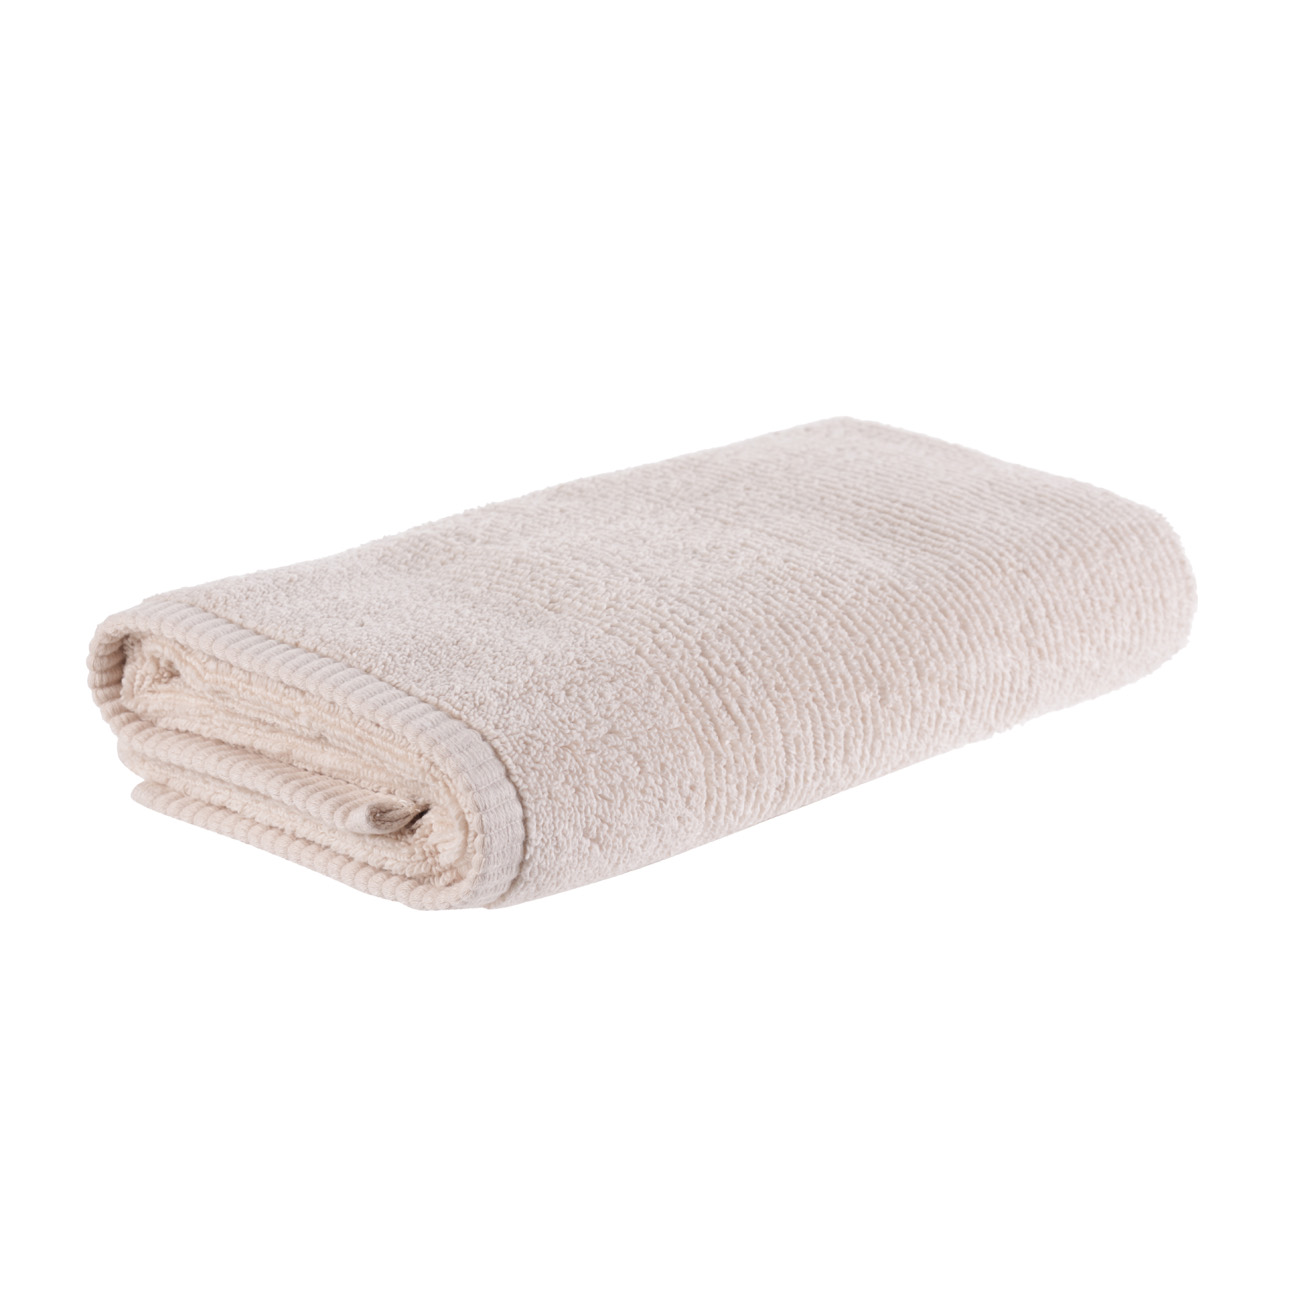 Towel, 50x90 cm, cotton, beige, Terry cotton изображение № 3